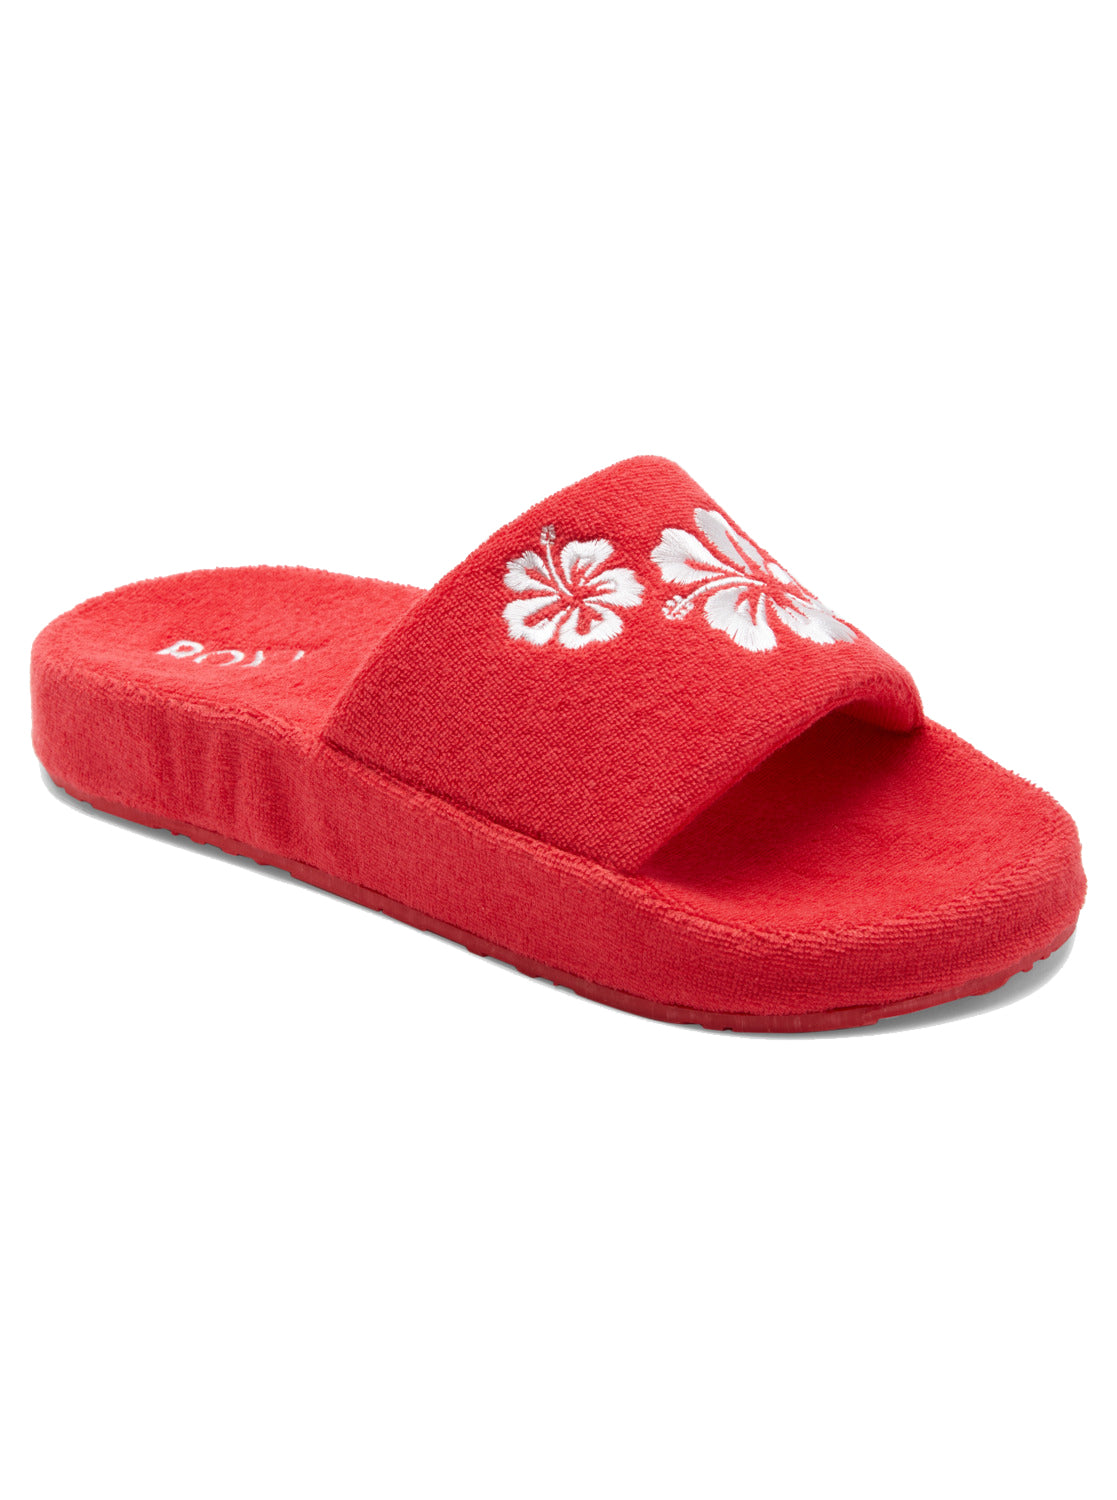 Roxy Slippy Sandals RED 8